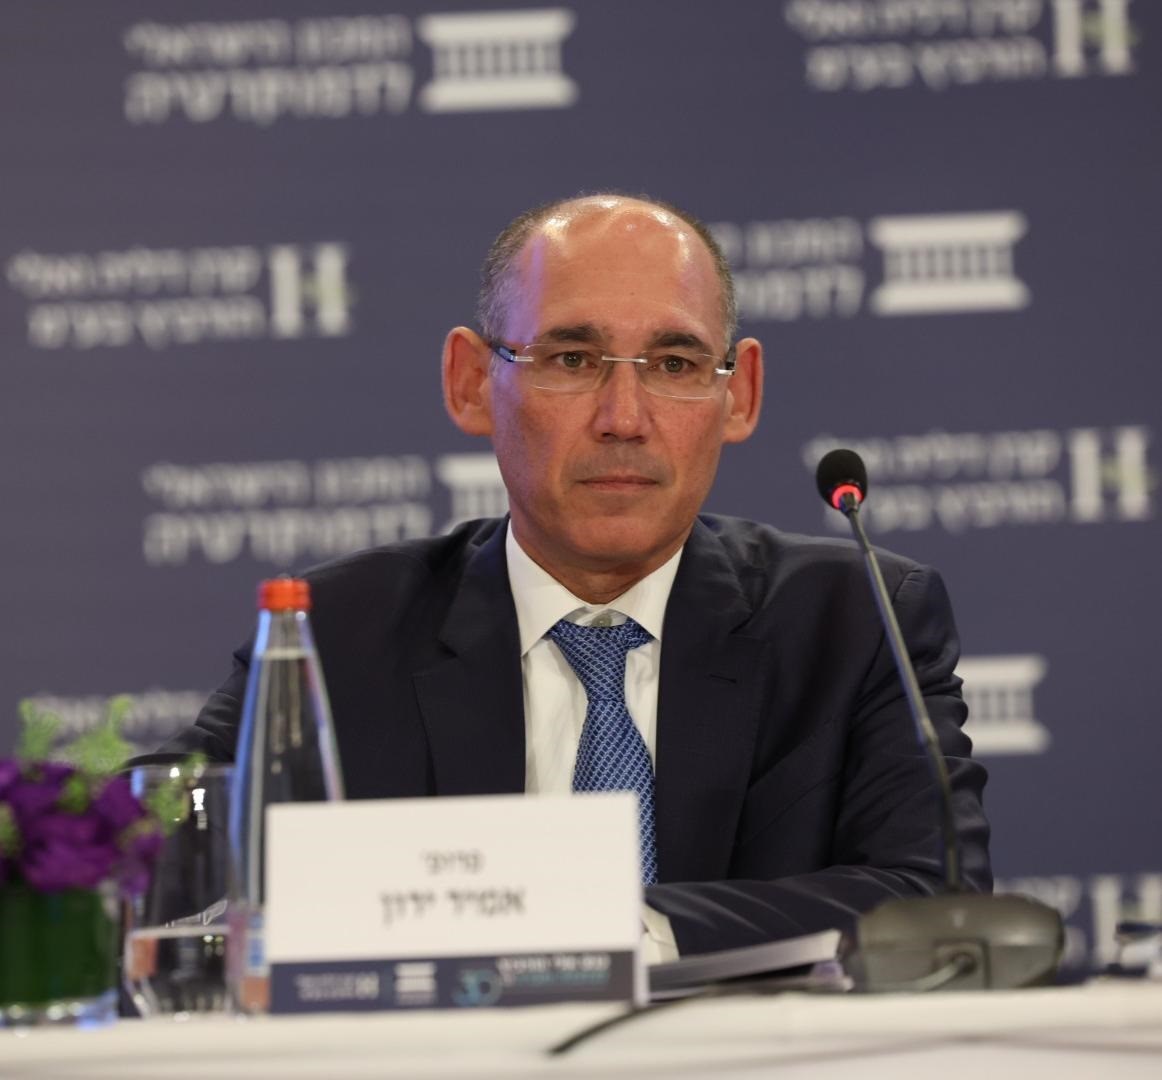 Where Is The Israeli Economy Headed? | Eli Hurvitz Conference